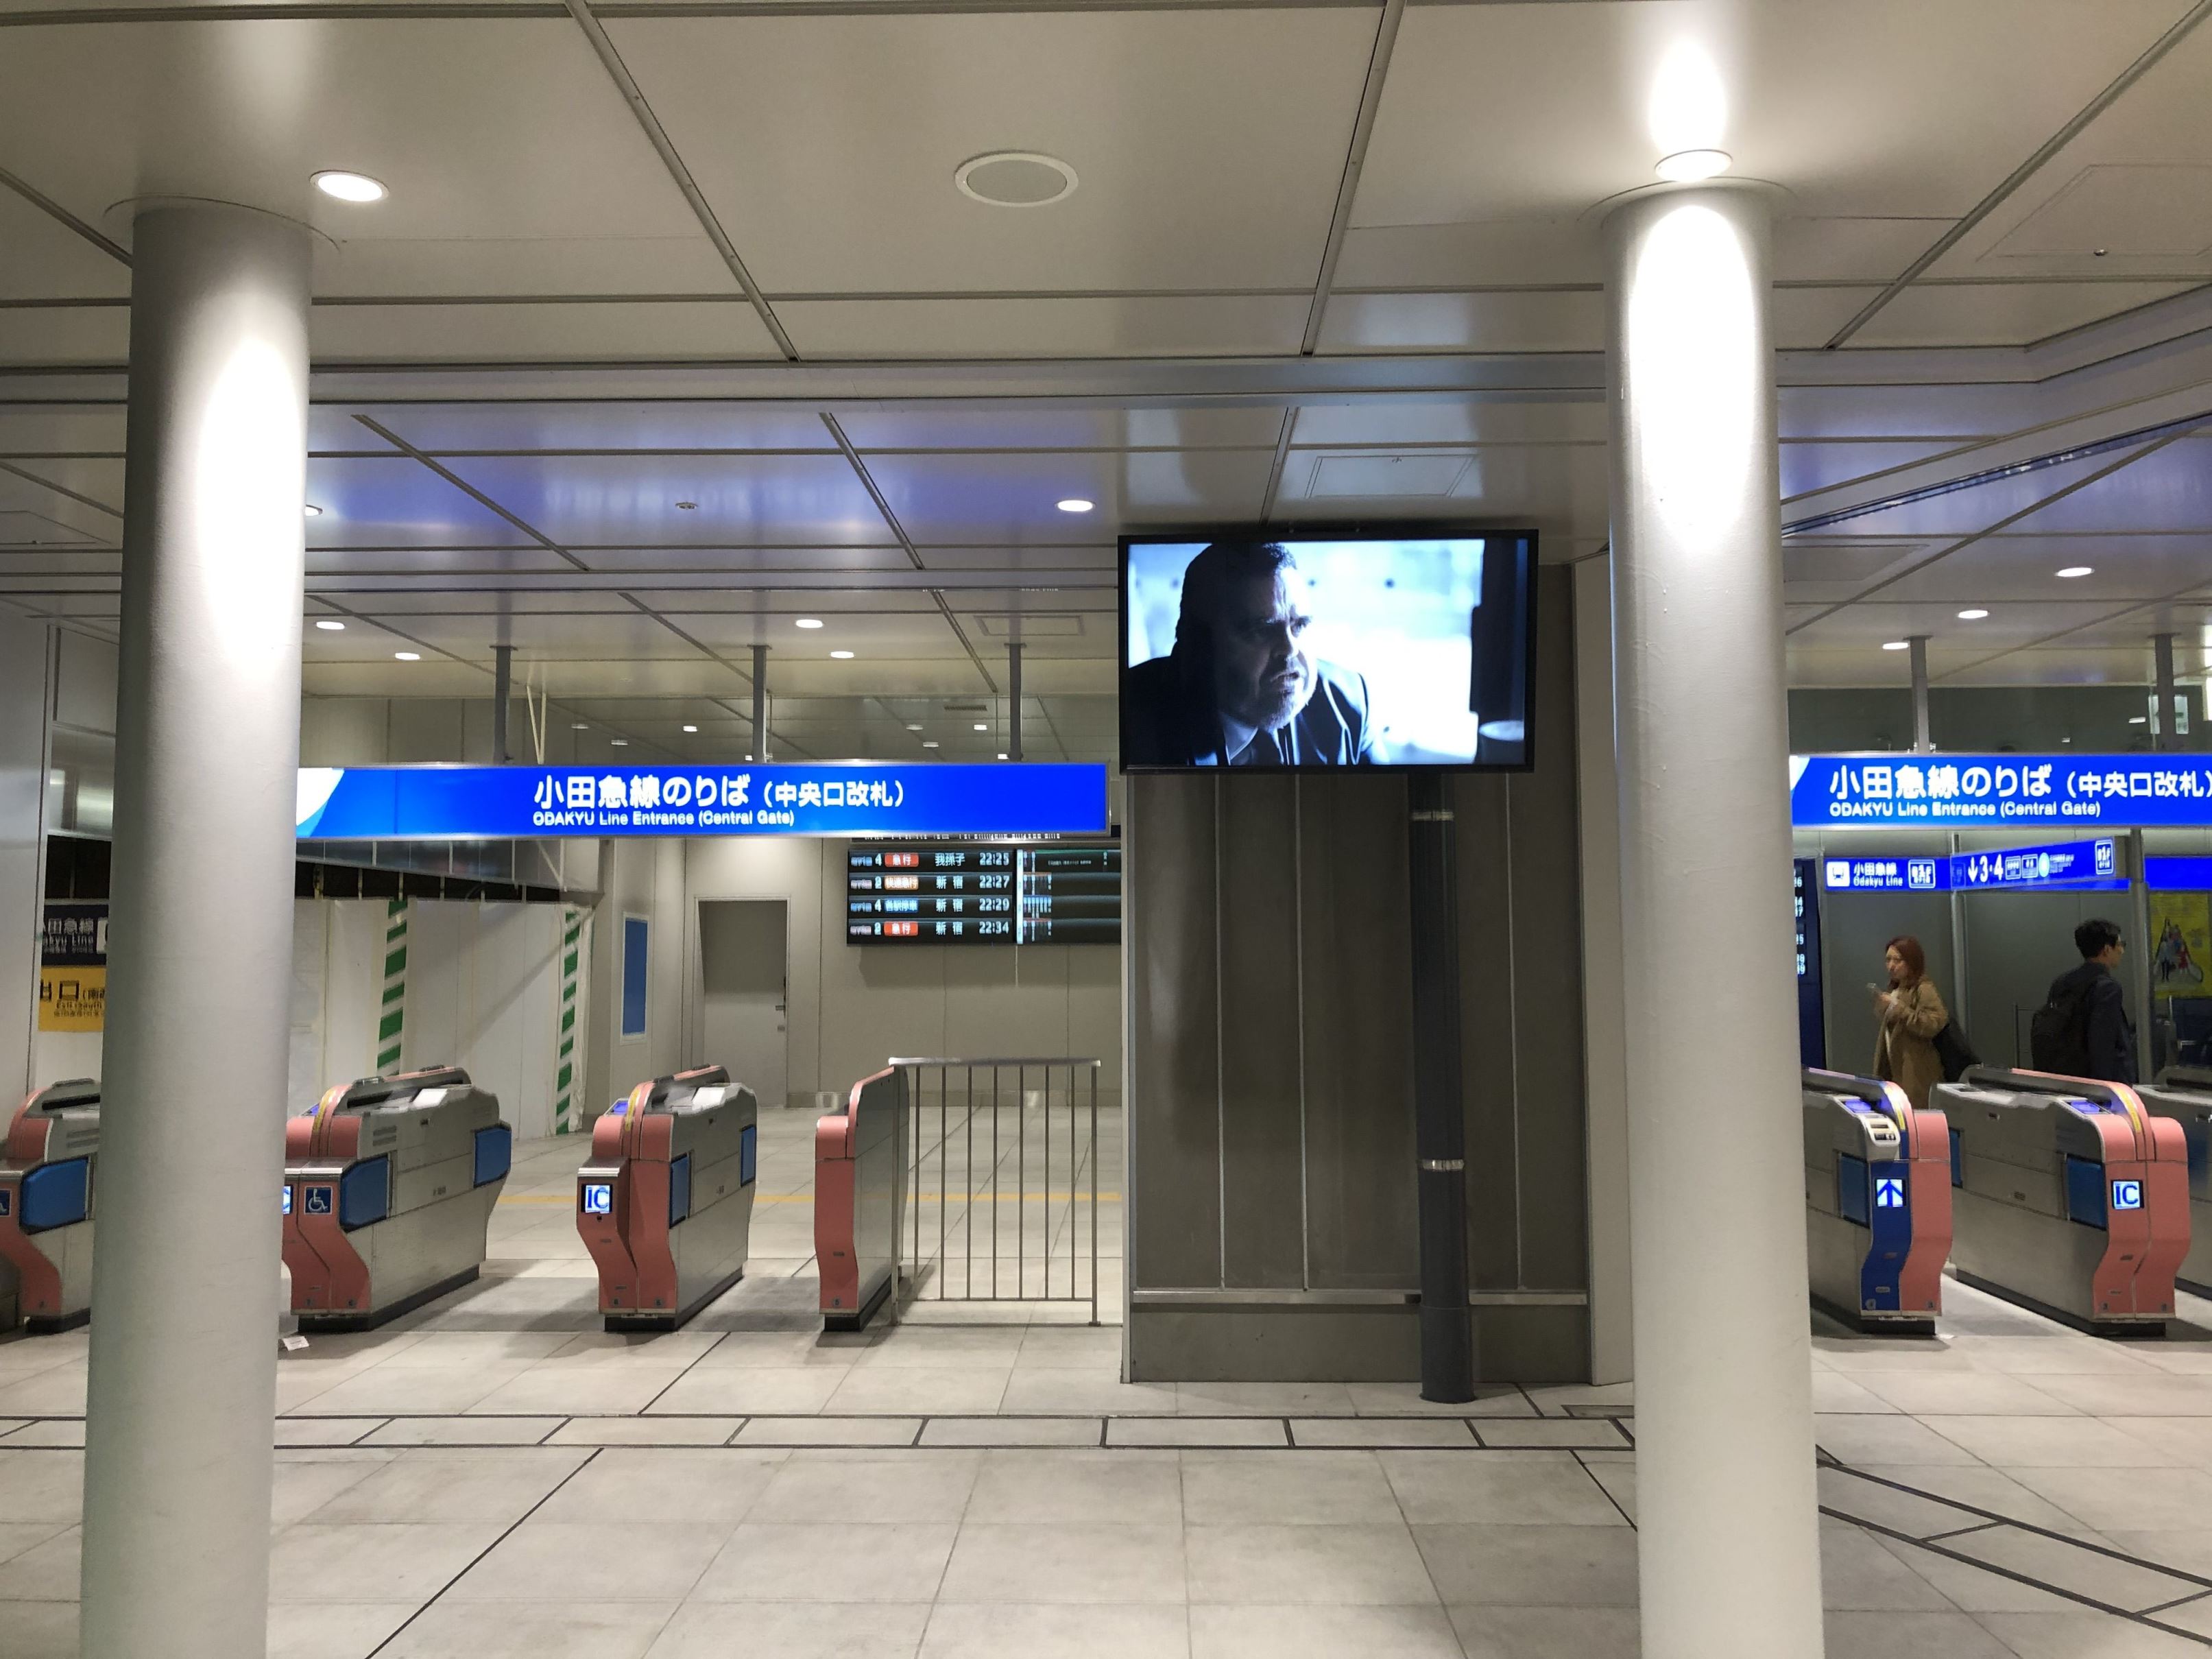 下北沢駅の井の頭線 小田急線間に乗り換え改札が設置されるとのこと